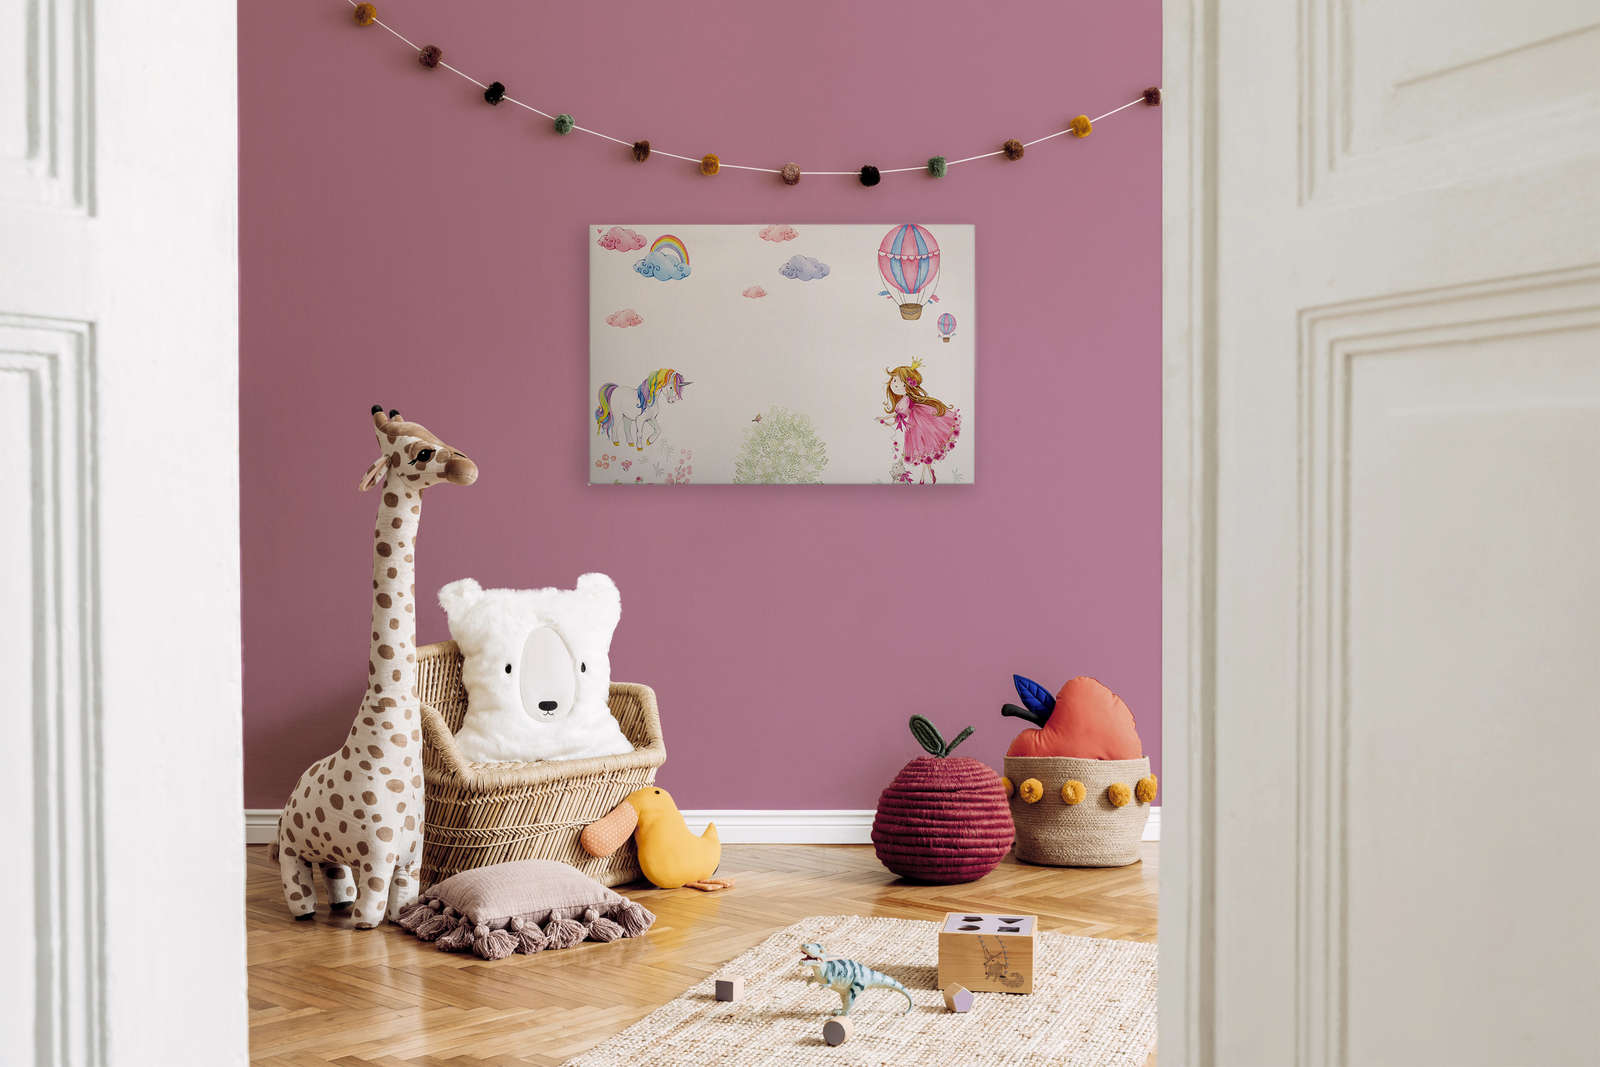             Tableau sur toile Chambre d'enfant avec princesse et licorne - 0,90 m x 0,60 m
        